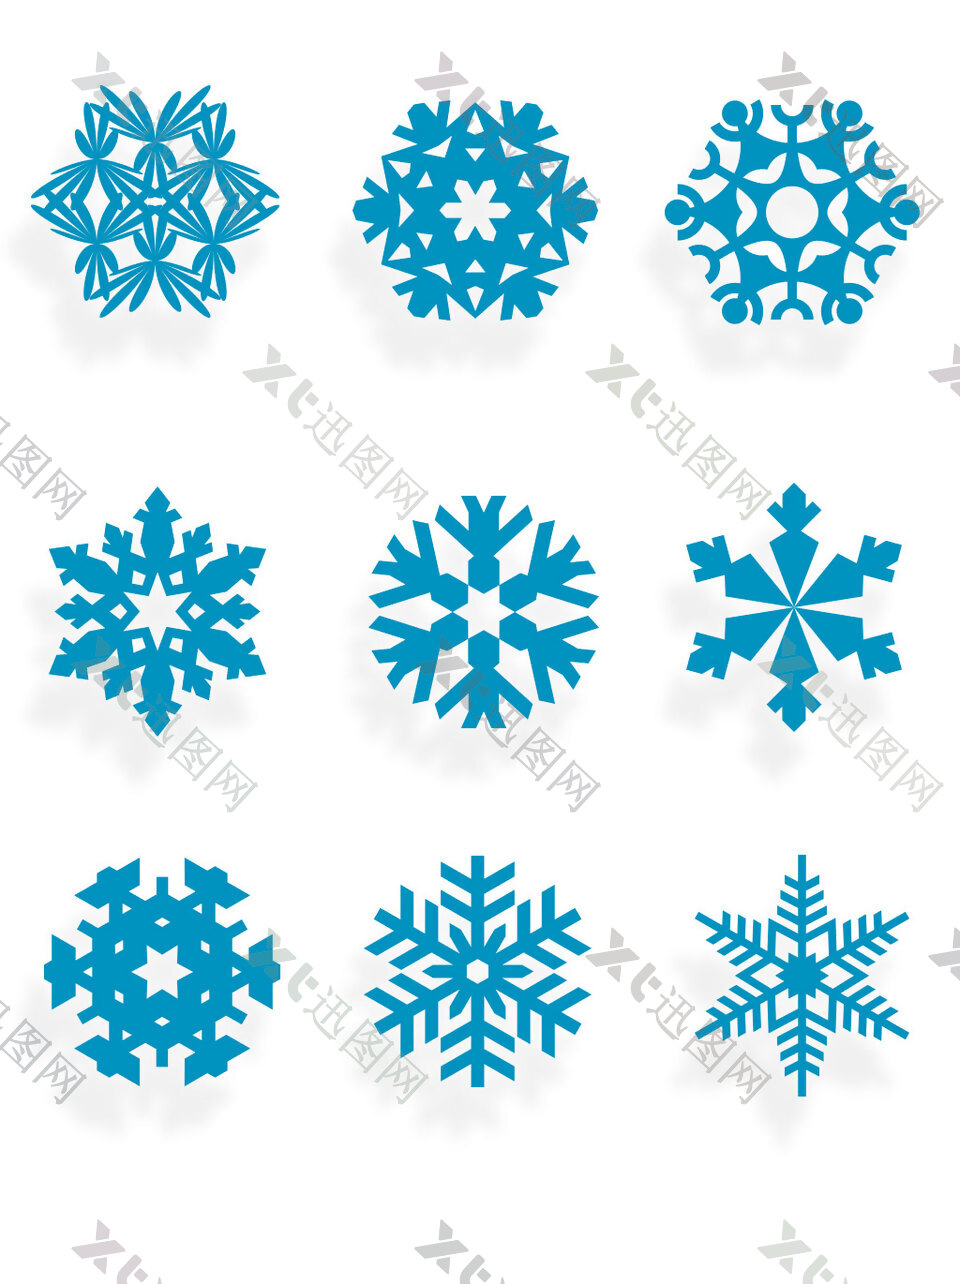 矢量元素蓝色雪花装饰素材冬天设计图案集合